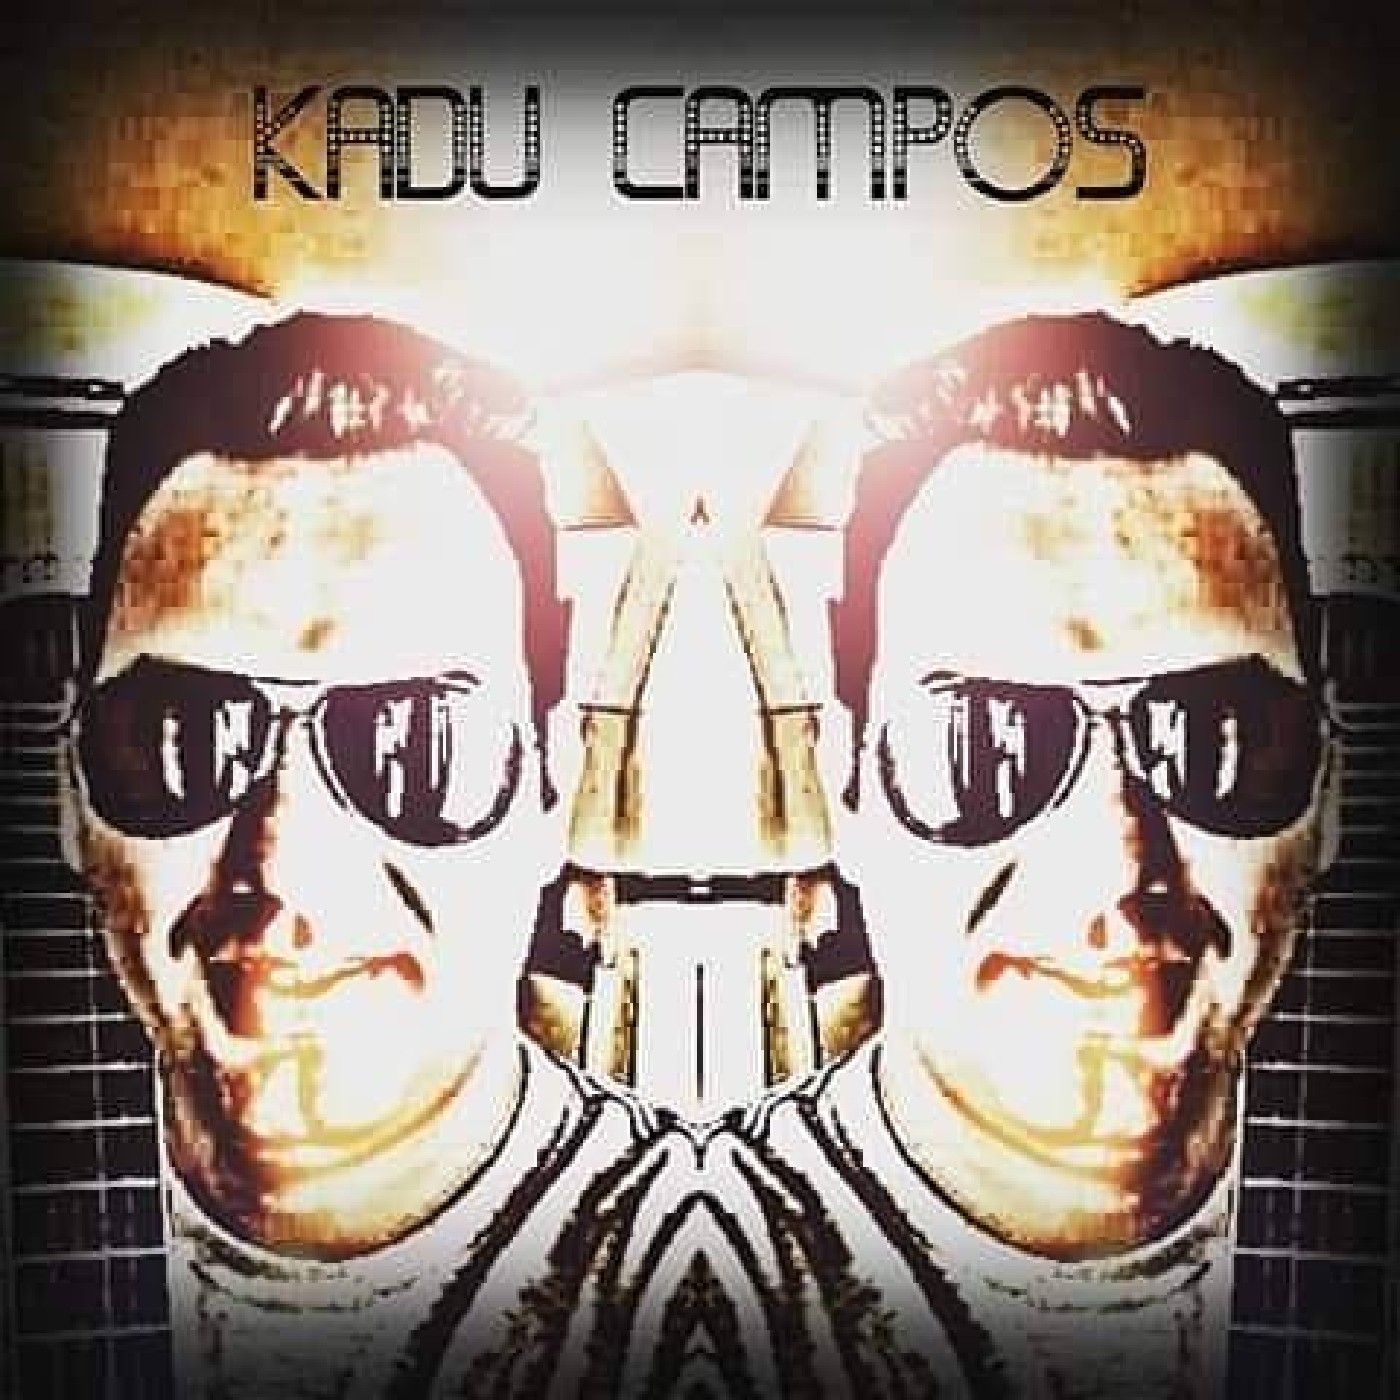 Kadu Campos's